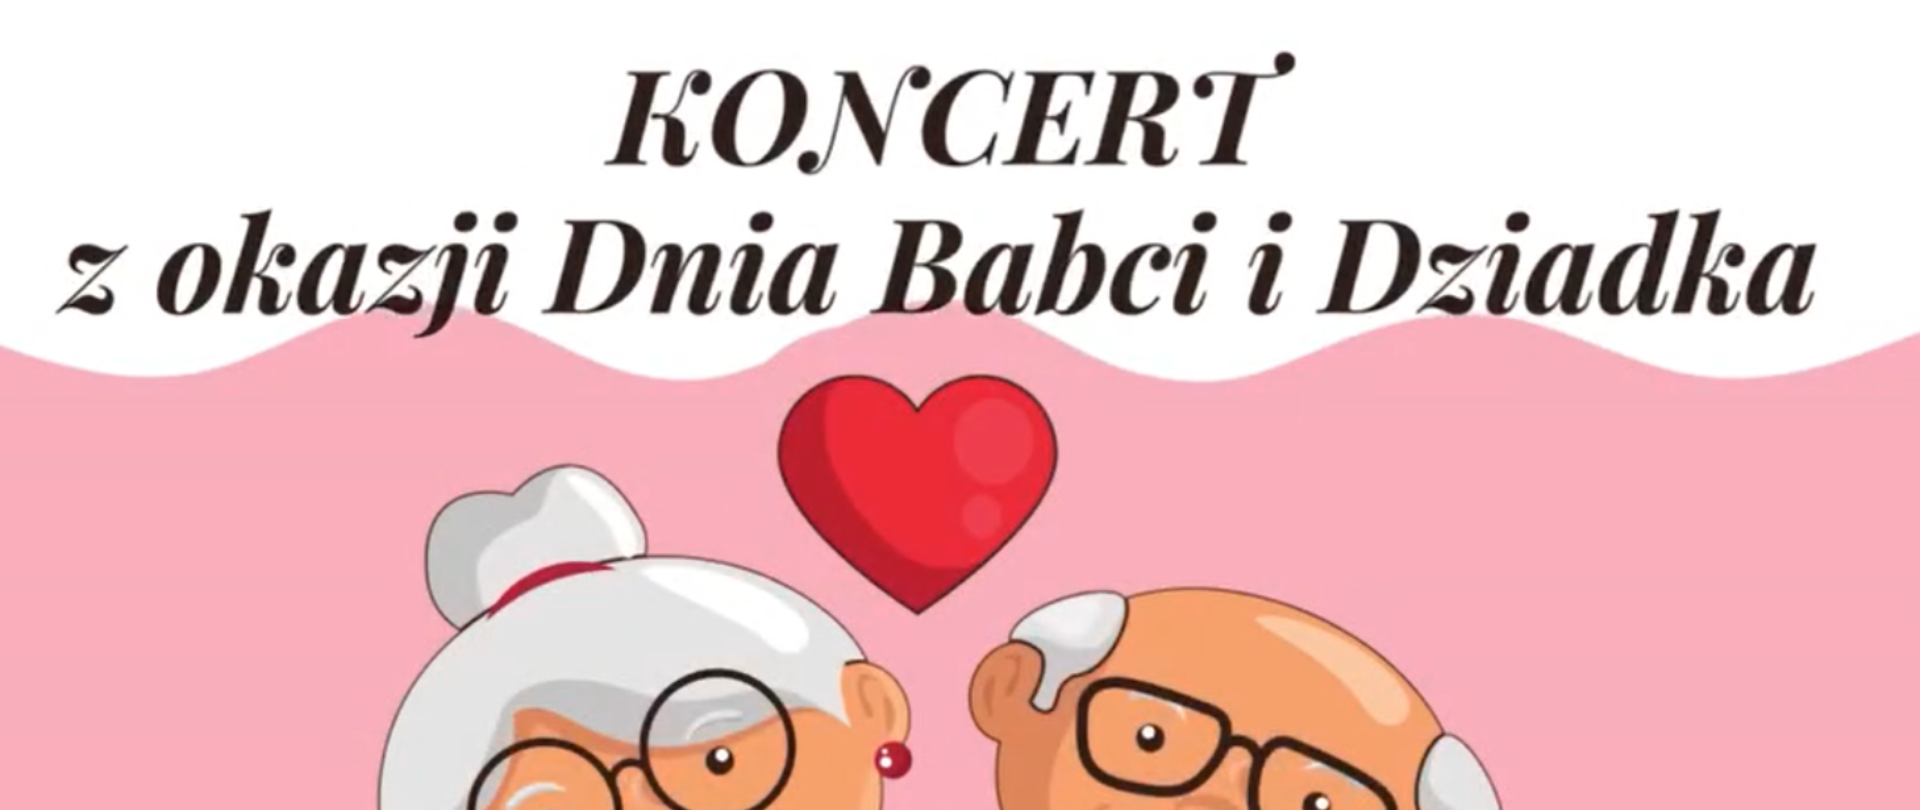 zdjęcie przedstawia napis Koncert z okazji Dnia Babci i Dziadka na biało-różowym tle z czerwonym sercem pośrodku i twarzami babci i dziadka